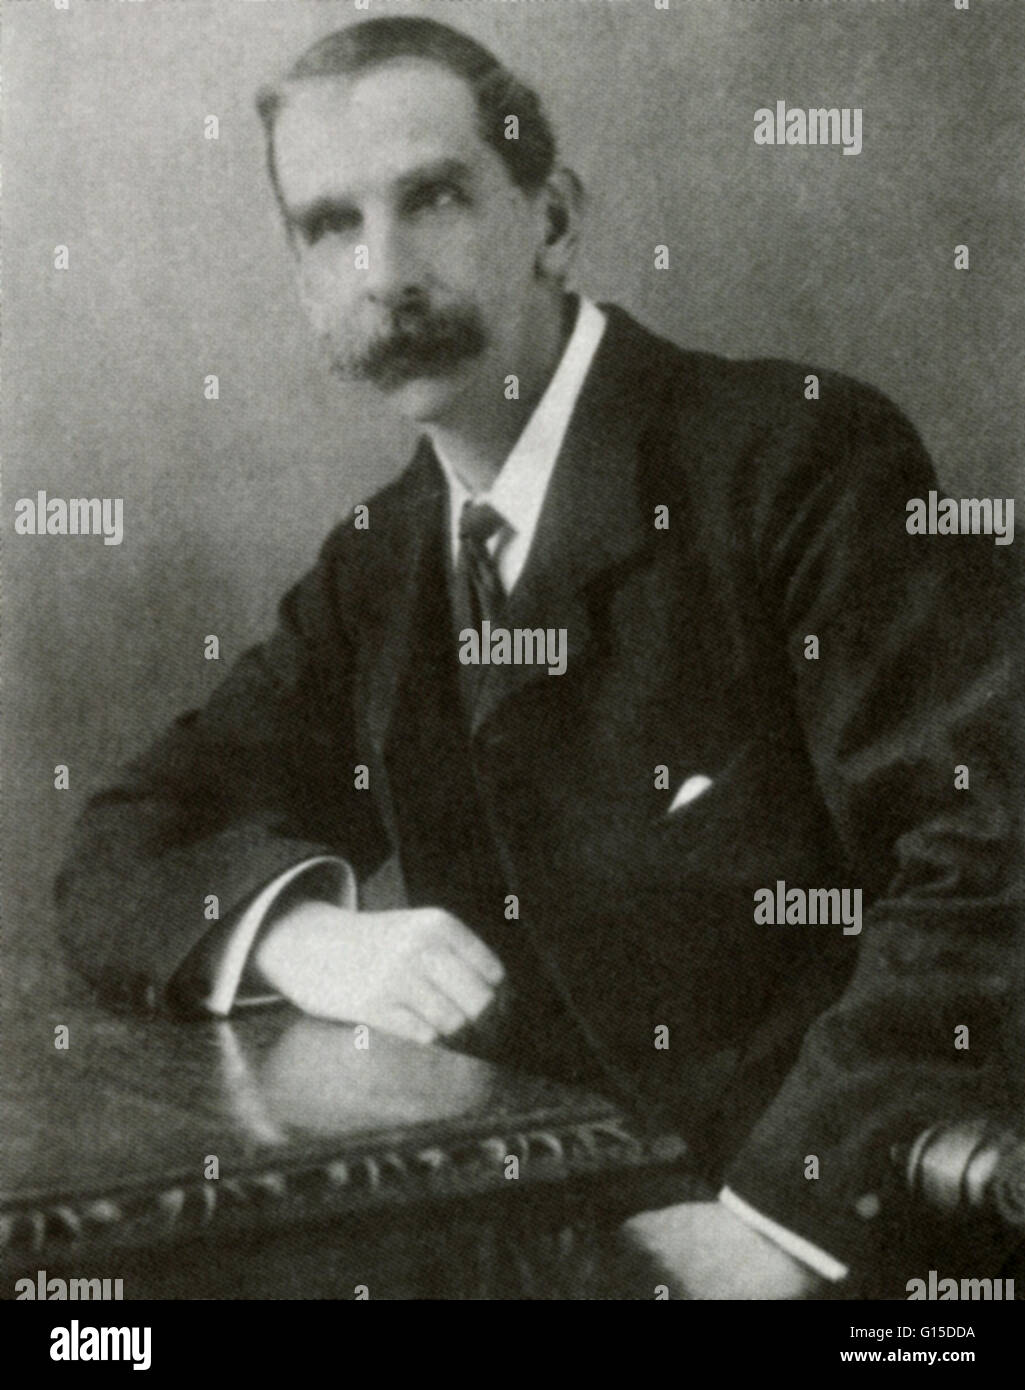 Victor Horsley (14 Aprile 1857 - 16 luglio 1916), chirurgo neurologico, fu il primo a rimuovere con successo un tumore del midollo spinale, nel 1887. Foto Stock